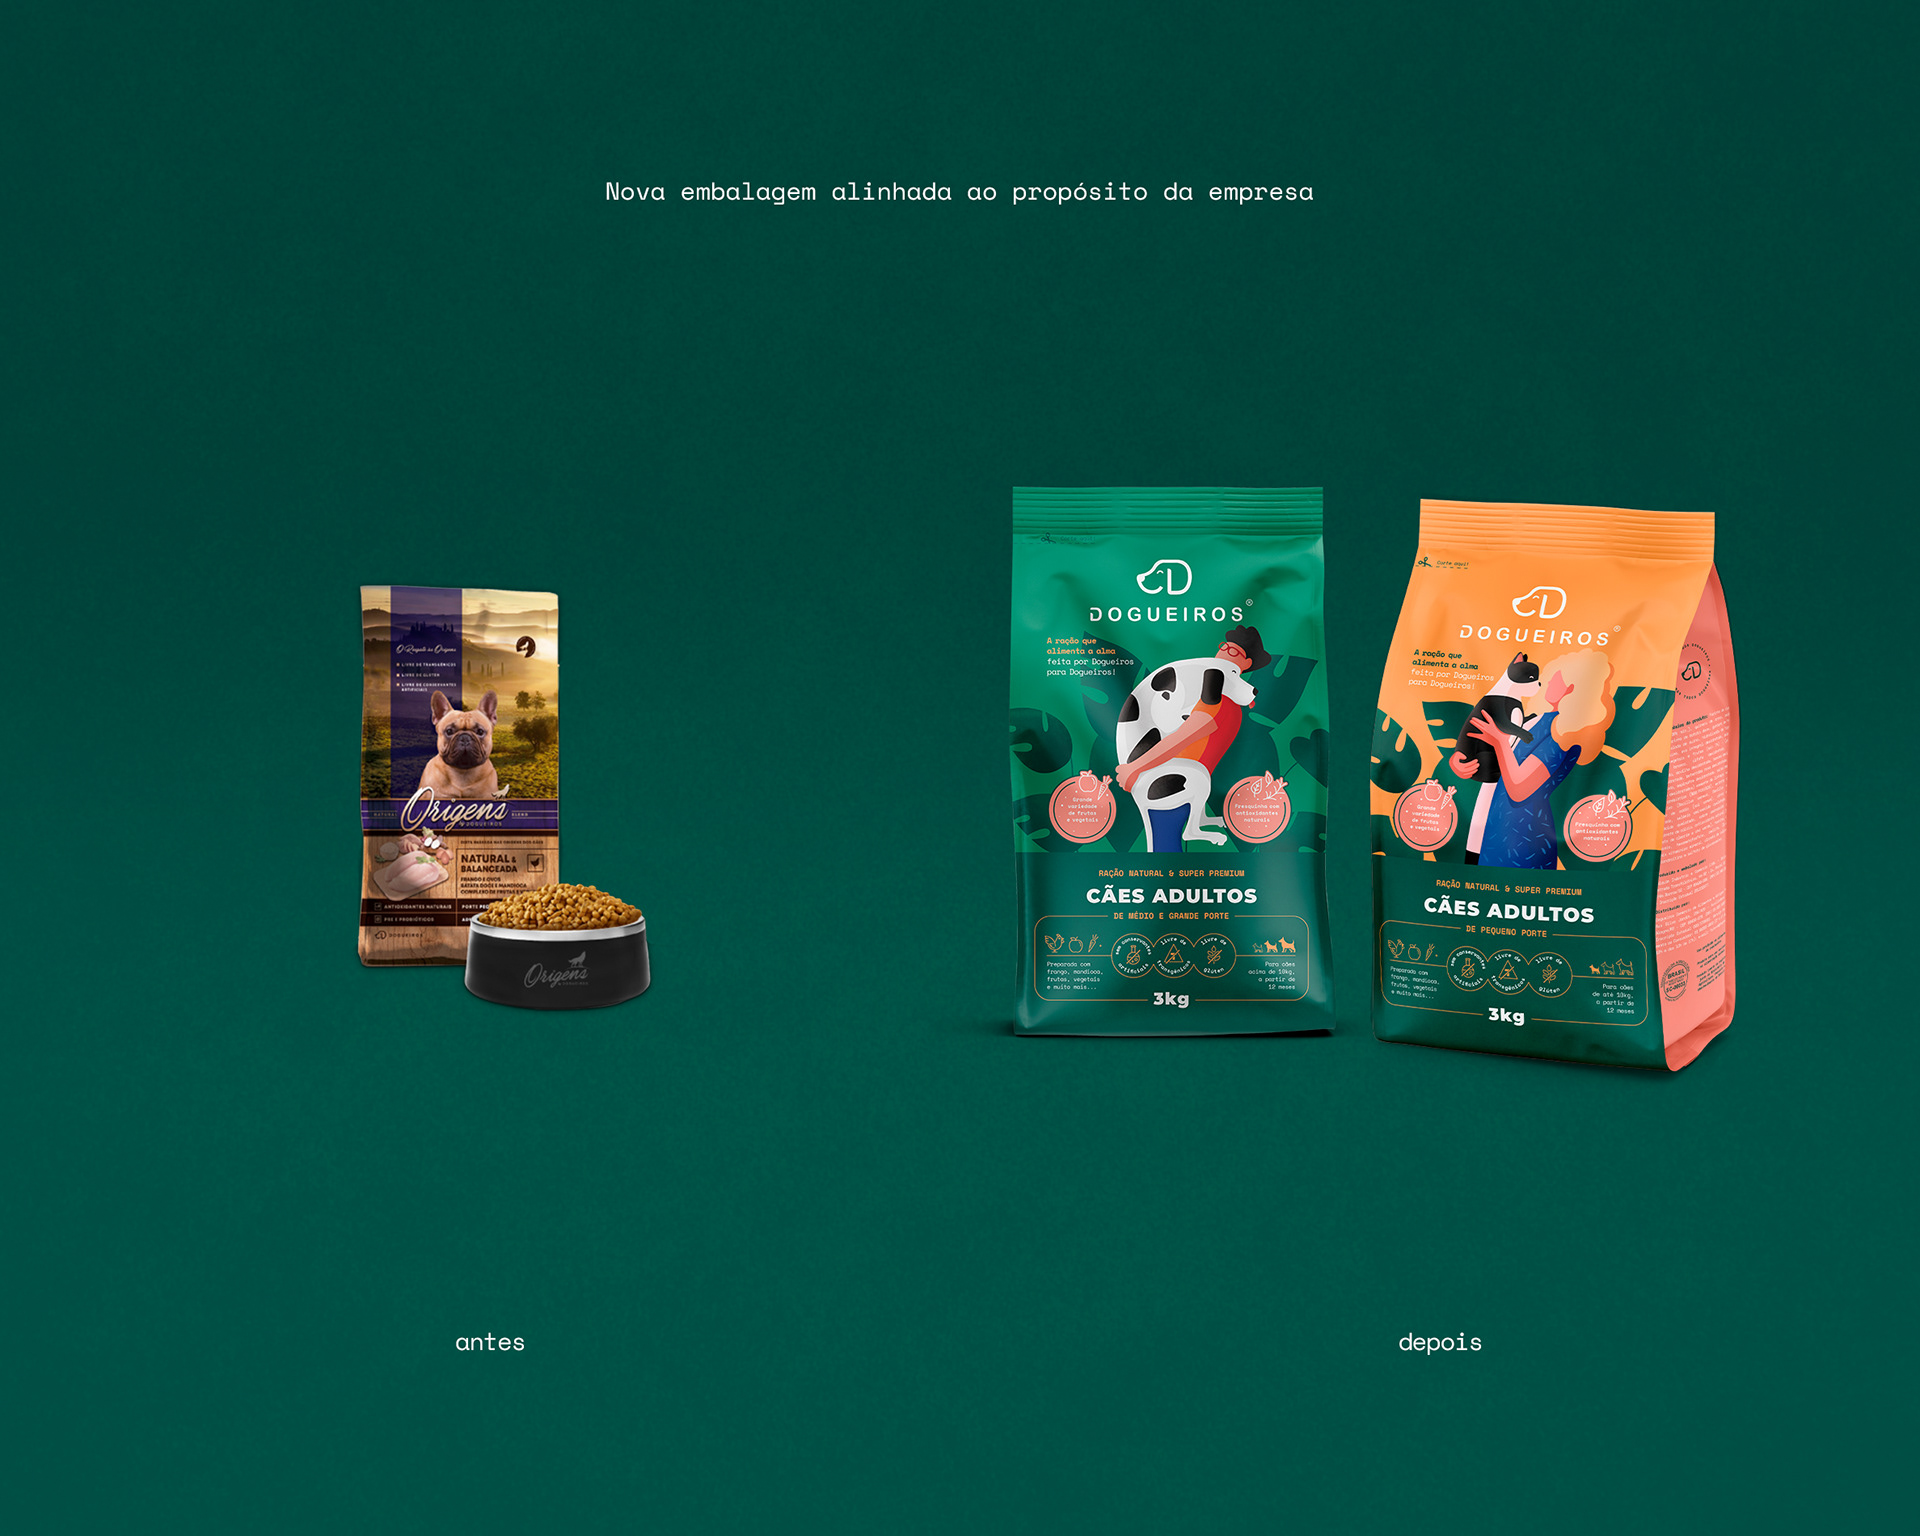 宠物食品包装设计 宠物食品包装设计图片 宠物食品包装设计理念 宠物食品包装设计公司 第8张